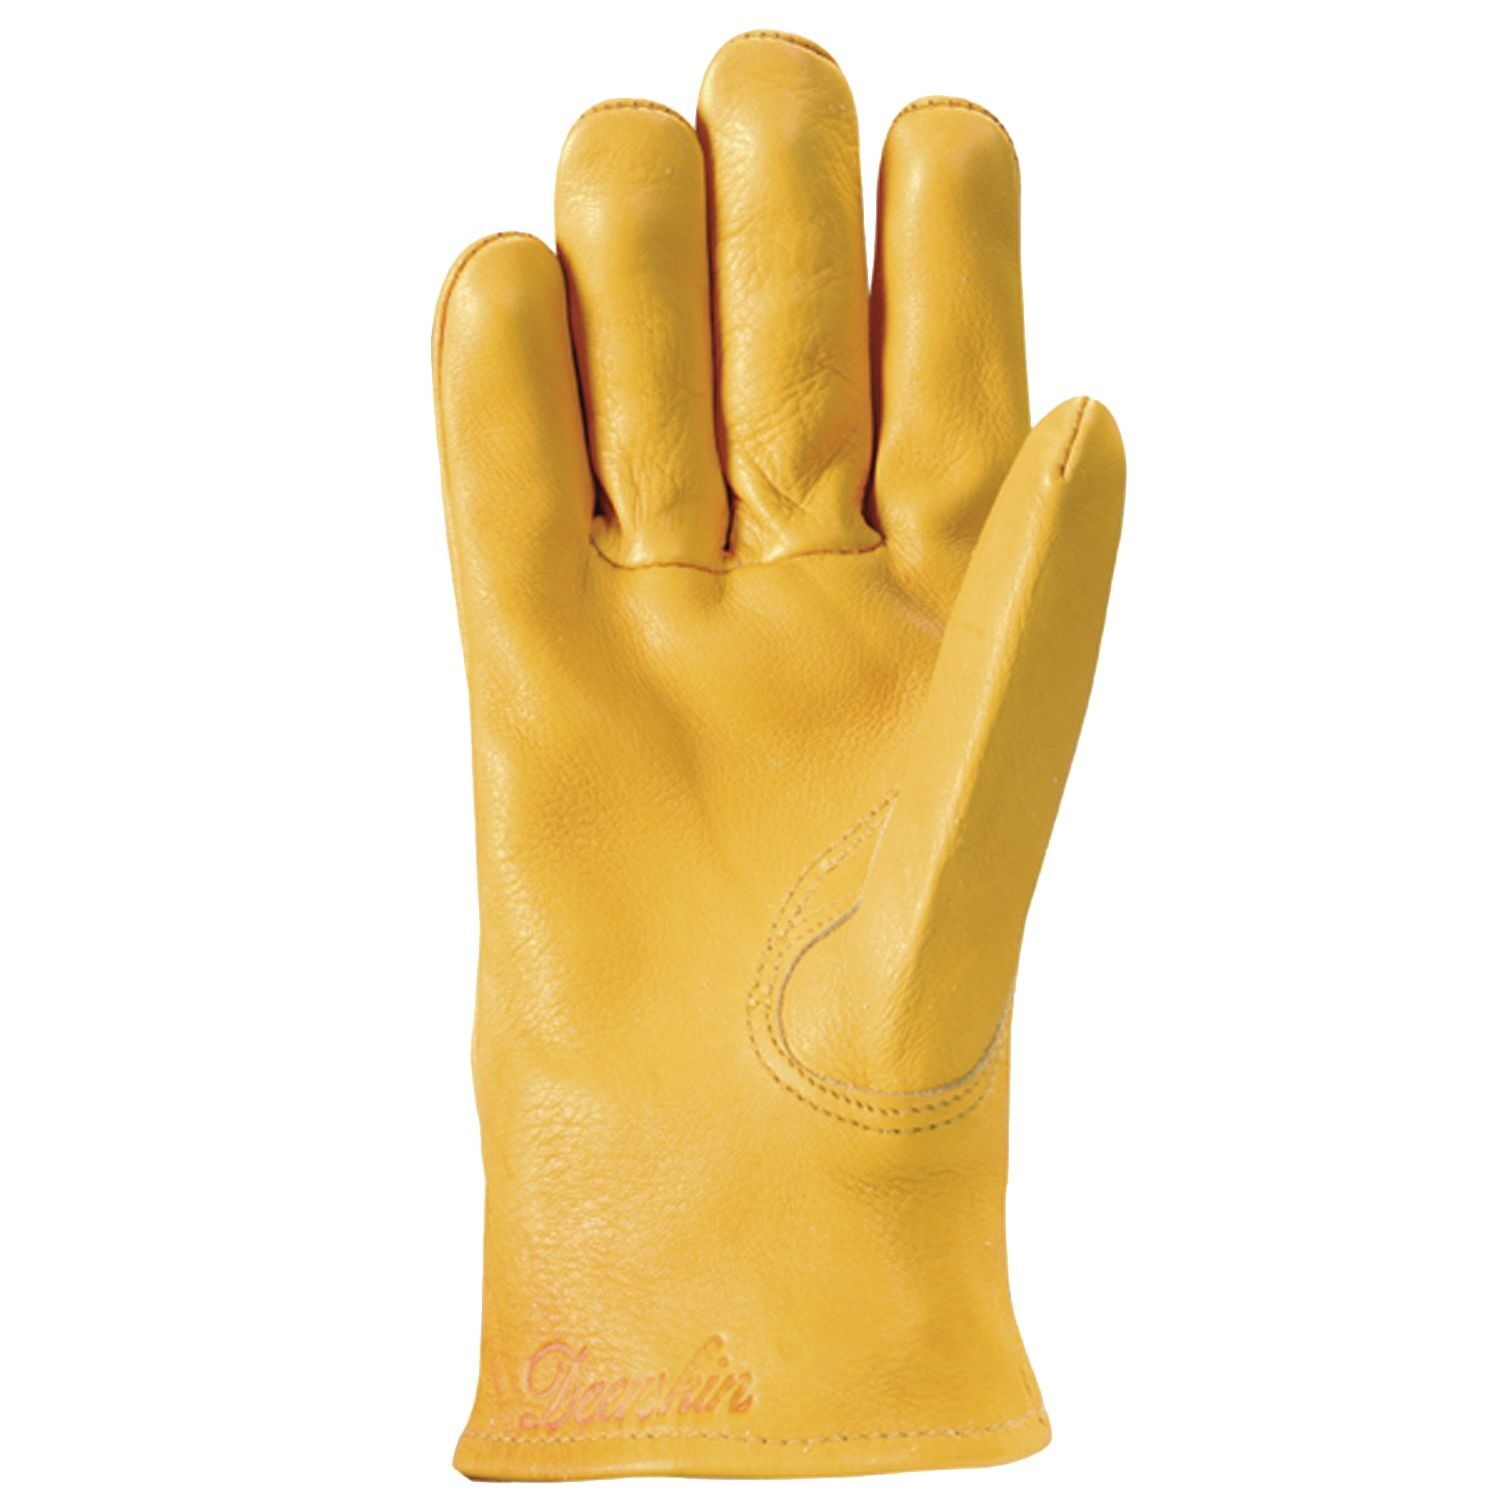 Women's Deerskin Leather Driver Gloves